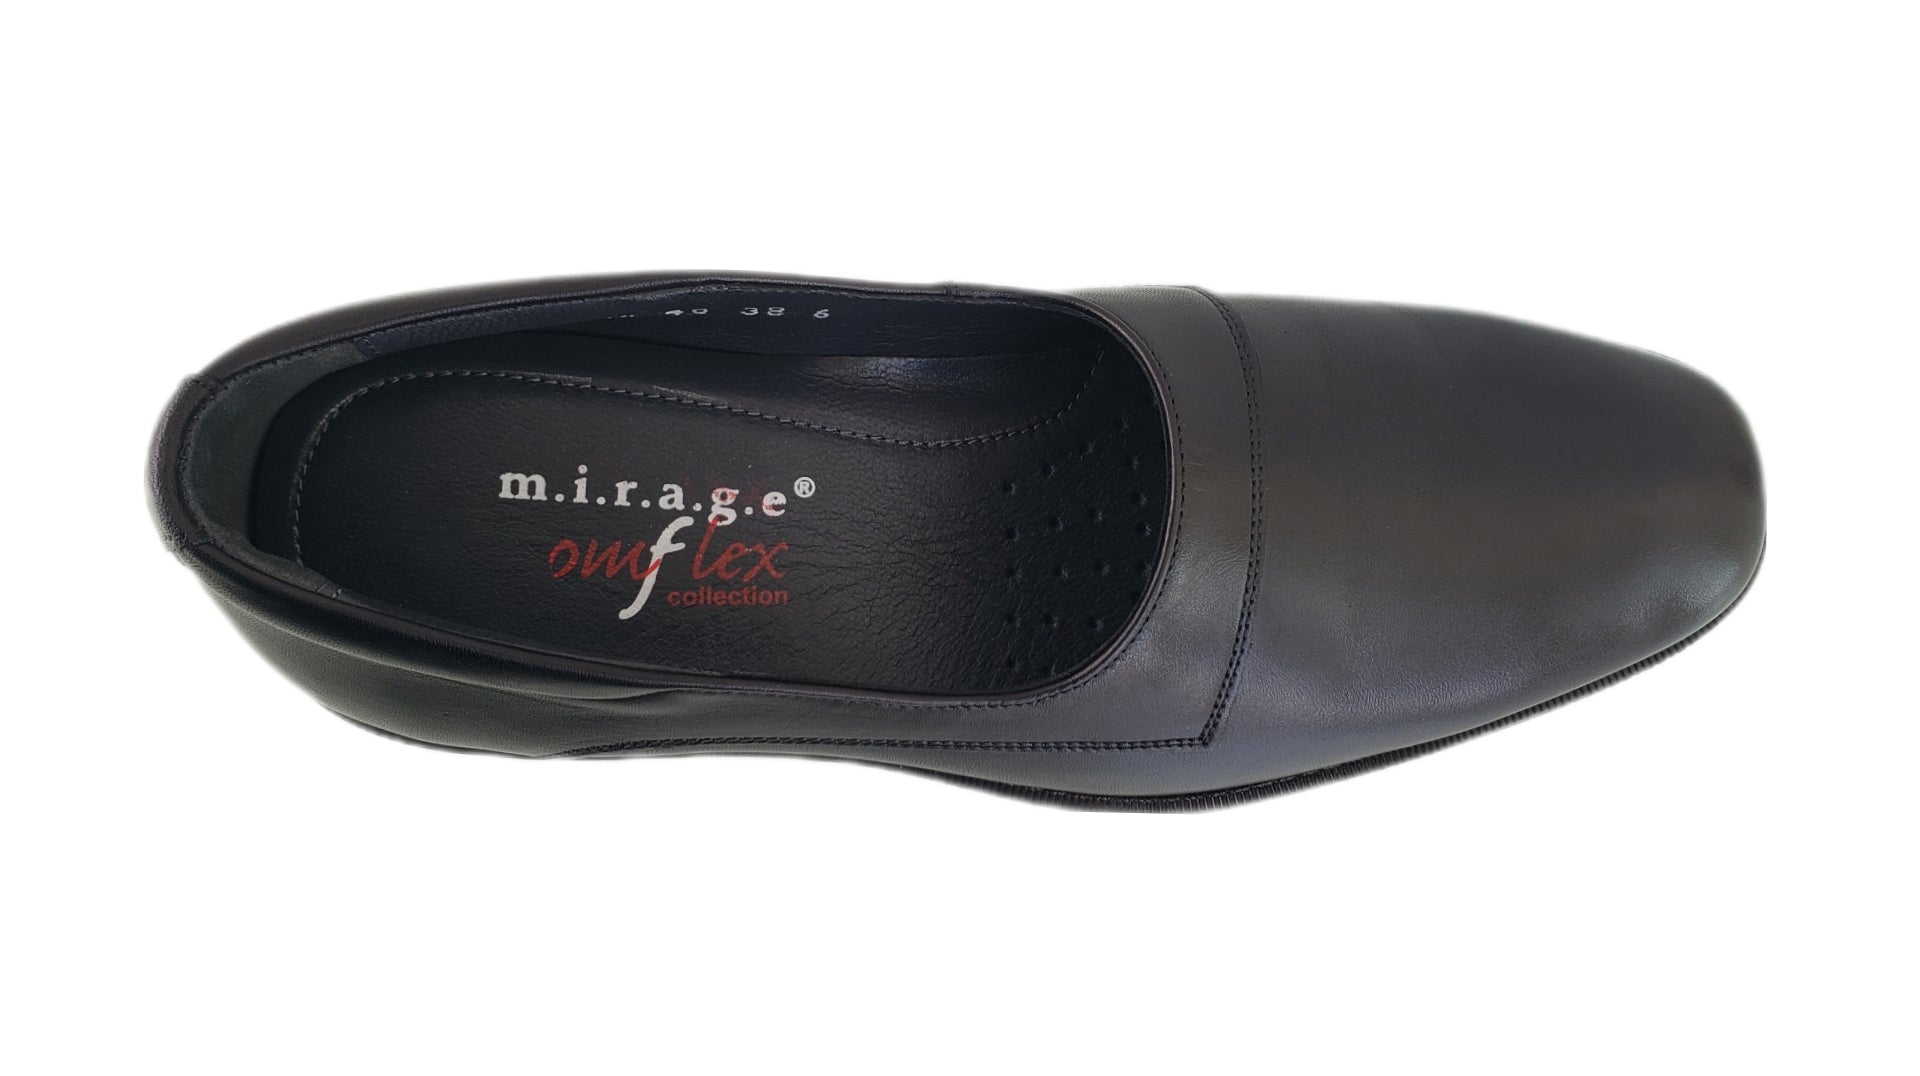 MIRAGE COMFLEX MEN'S BLACK LOW CUT SLIP ON SHOES - 7654